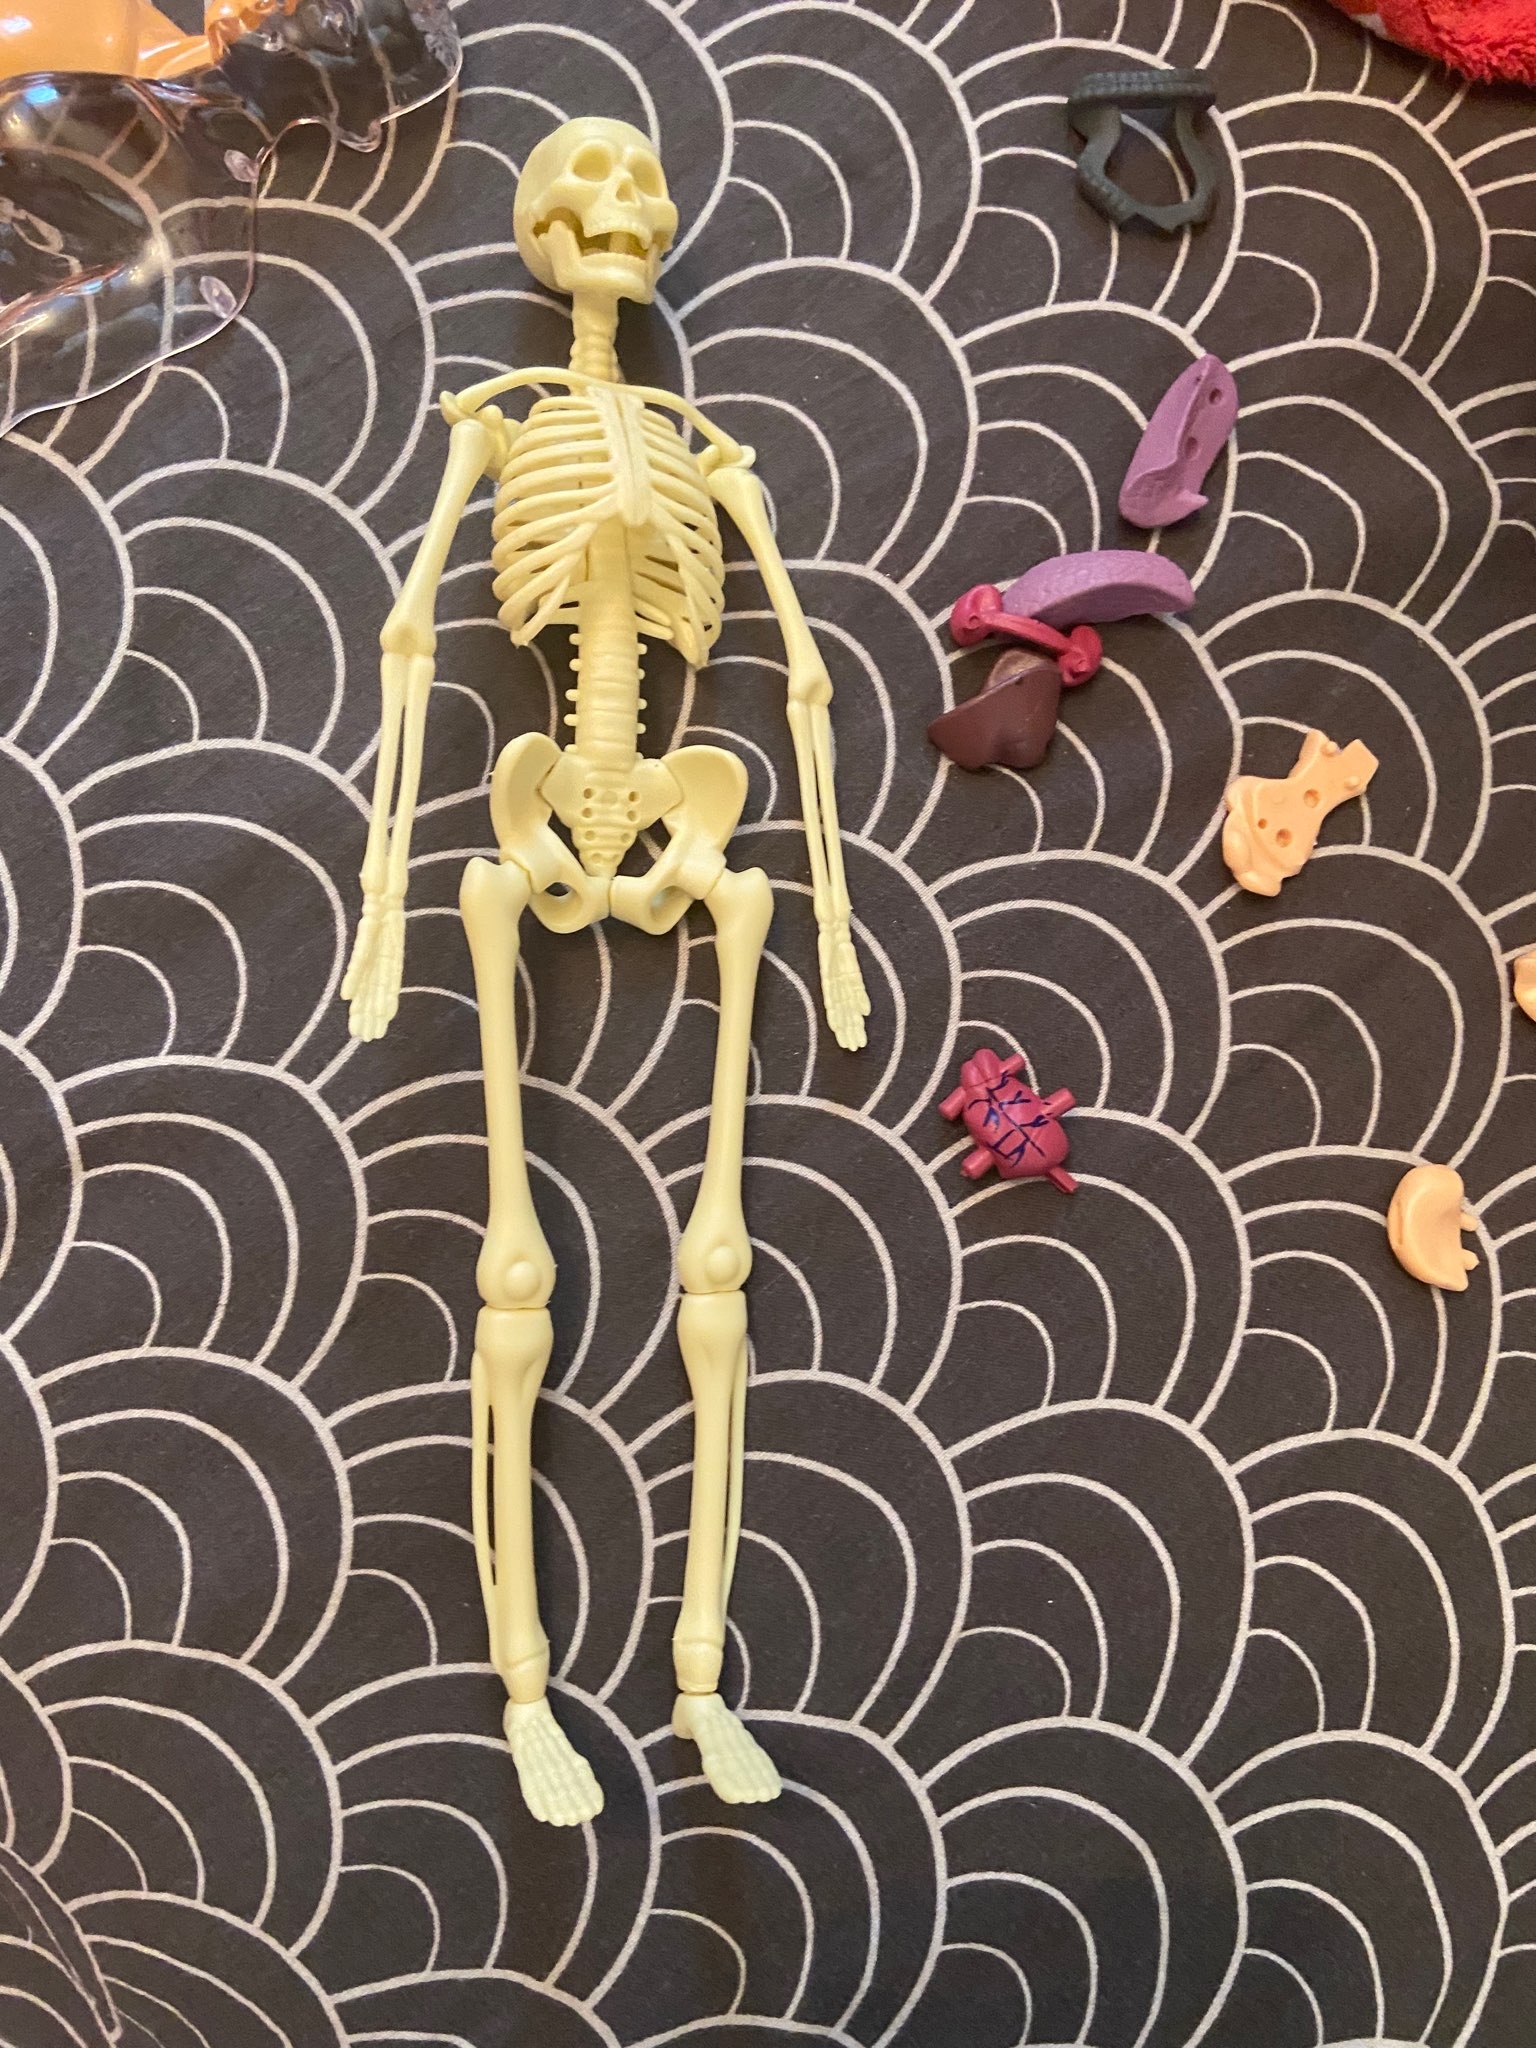 Фотография покупателя товара Набор для опытов «Строение тела», анатомия человека